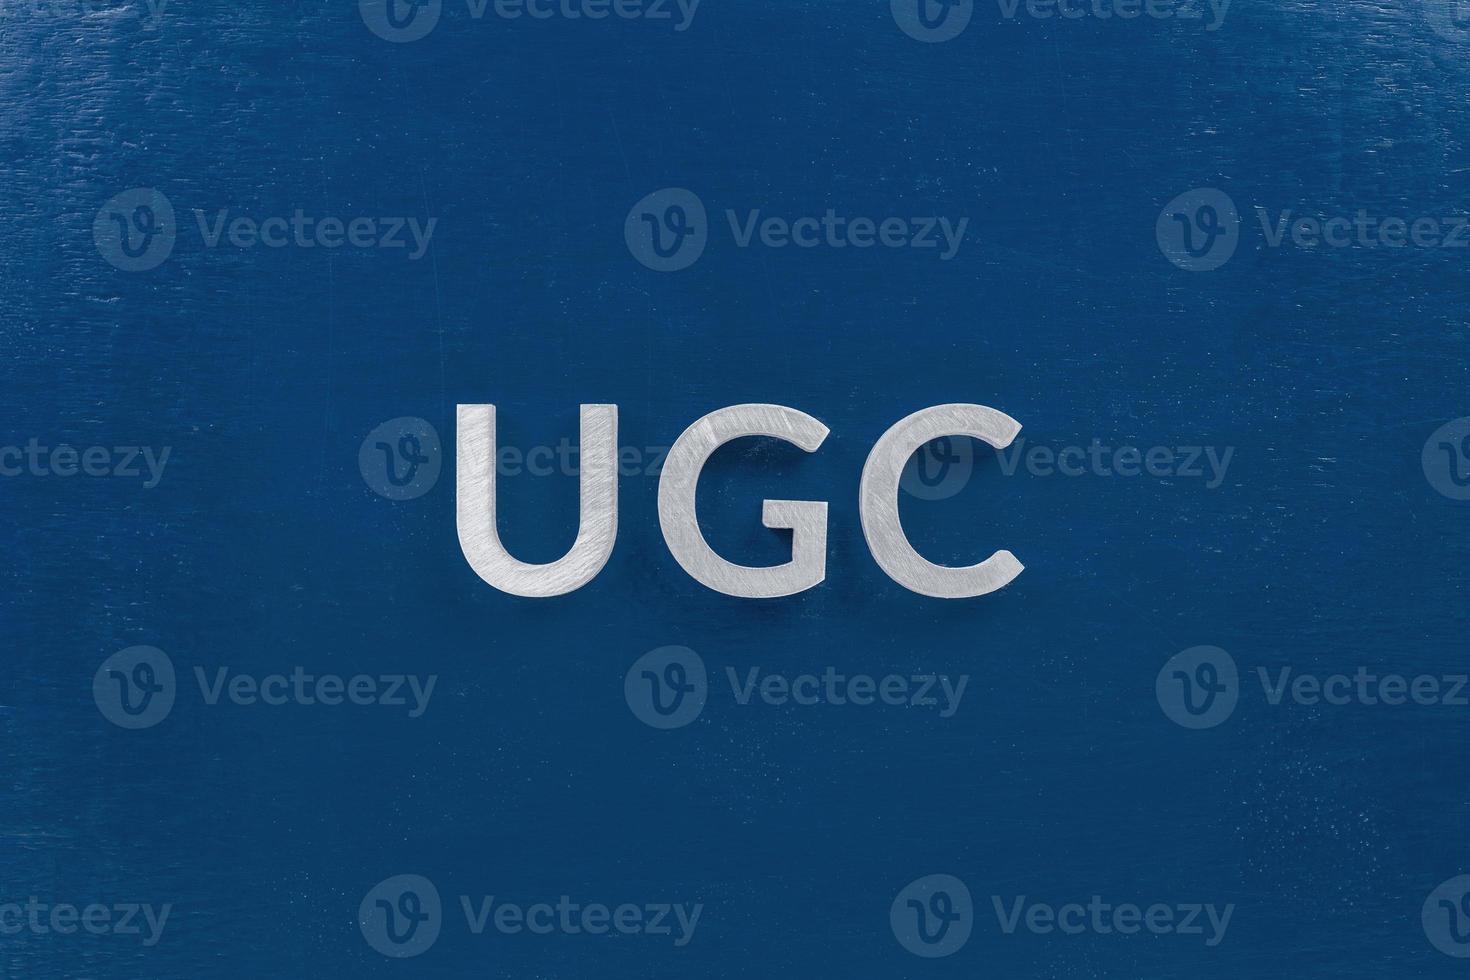 de woord ugc - gebruiker gegenereerd inhoud - gelegd door wit zilver metaal brieven Aan klassiek blauw achtergrond in vlak leggen foto